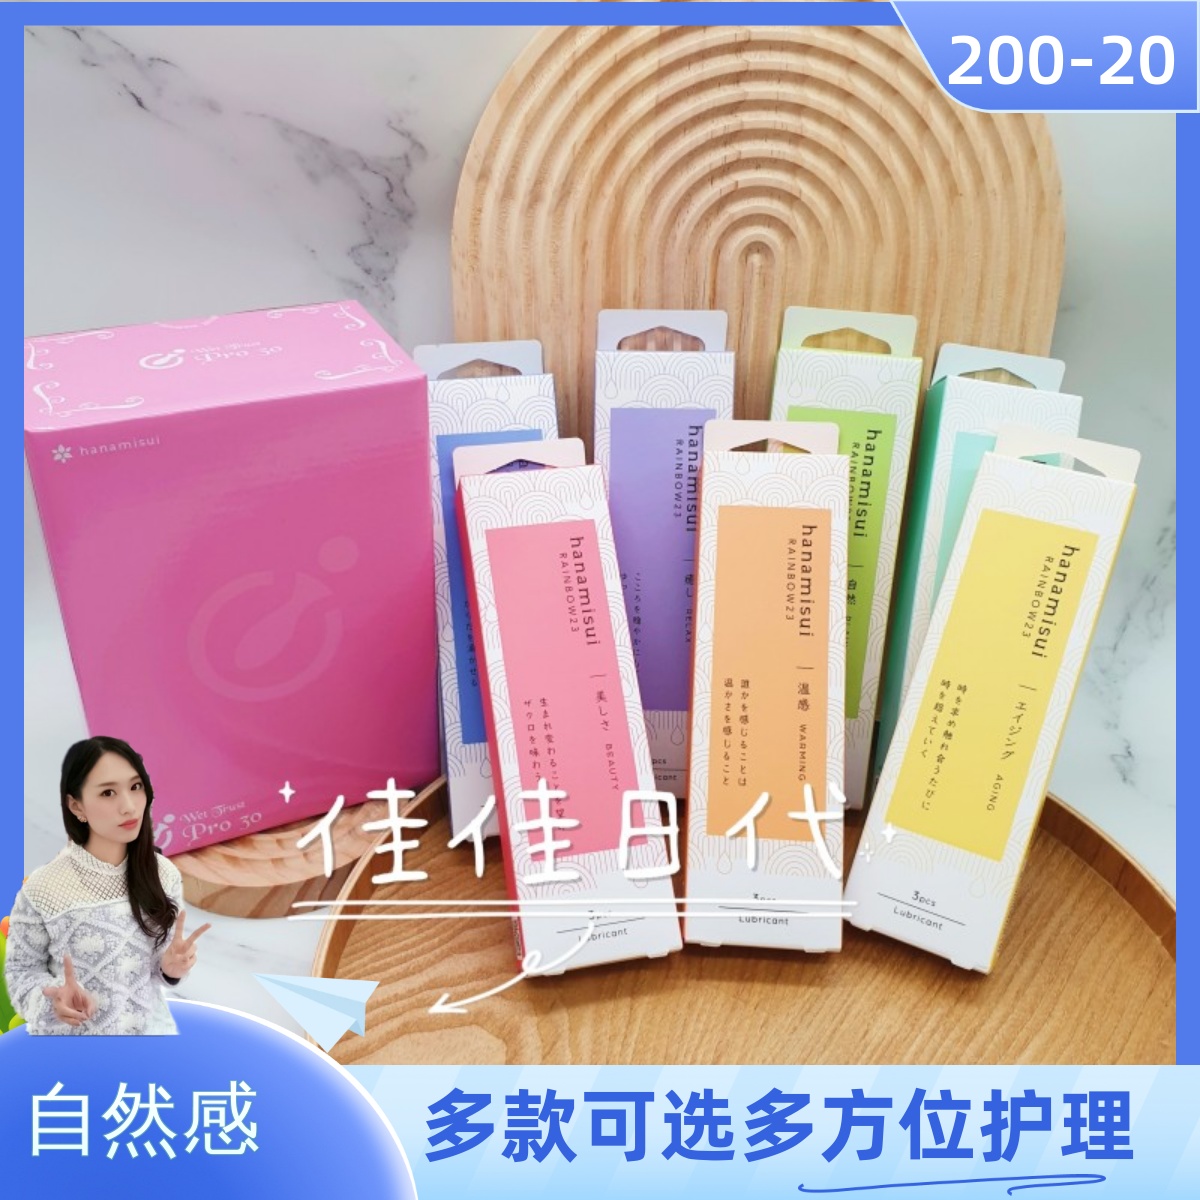 日本hanamisui女性私处护理凝胶彩虹双倍补水清洁乳酸箘Pro滑润